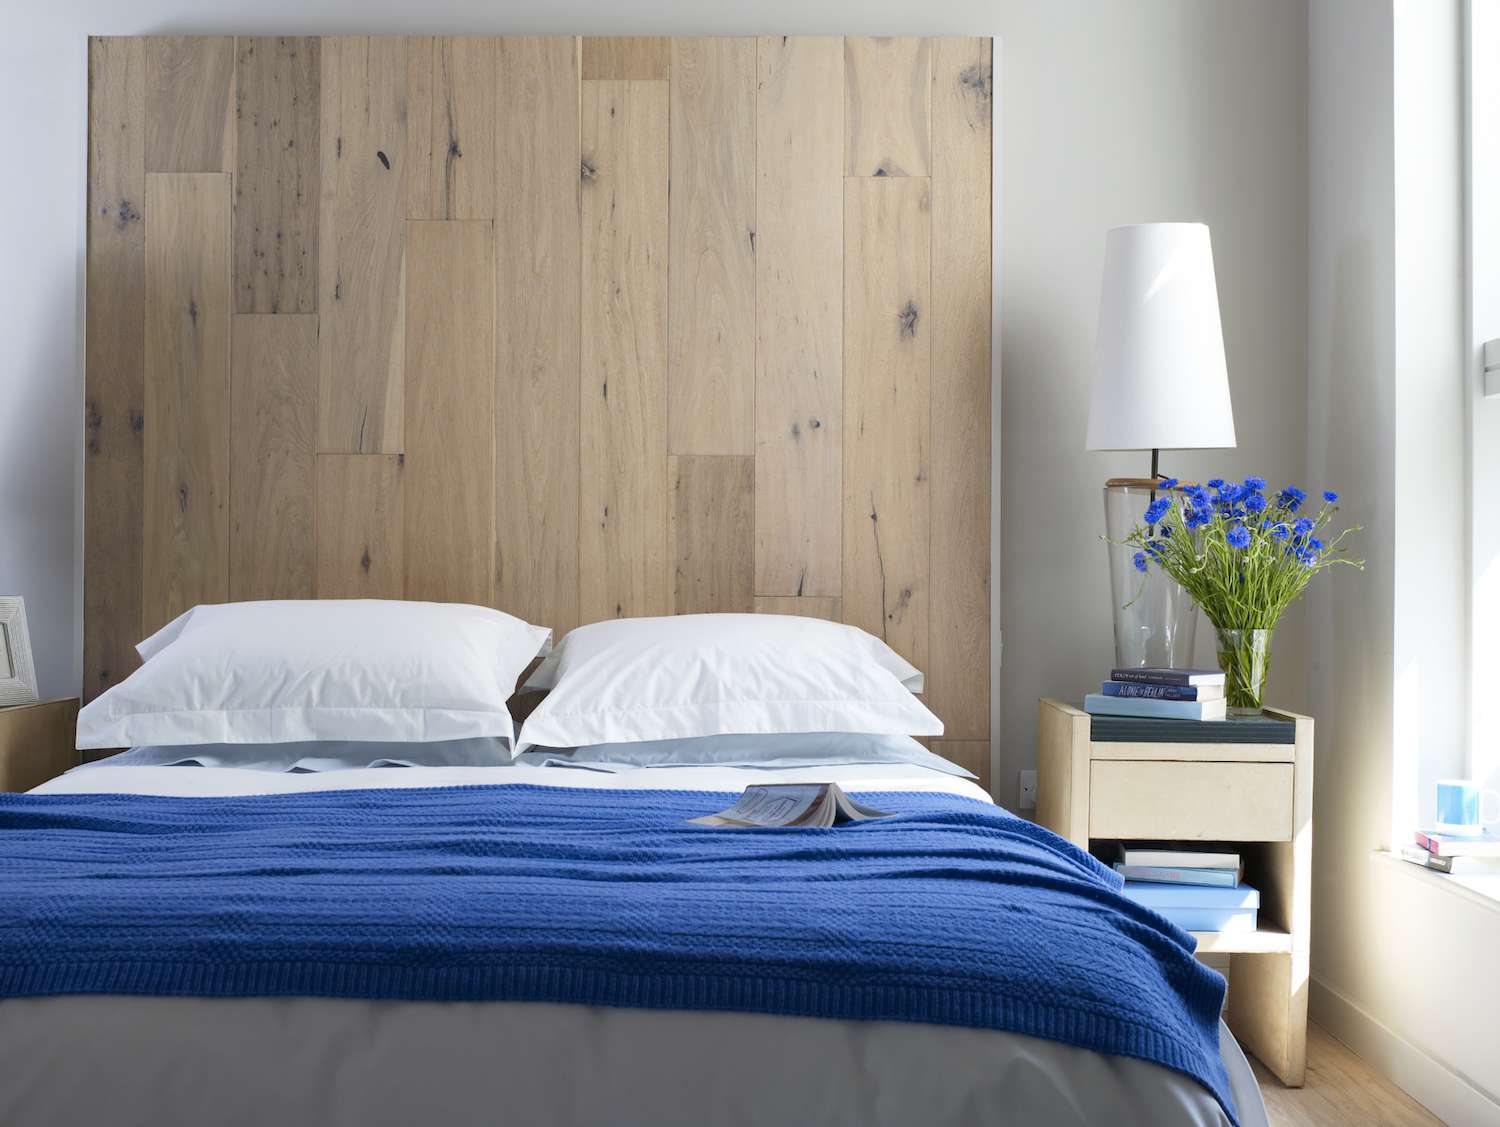 quarto com roupa de cama azul e flores azuis em um vaso em uma mesa lateral